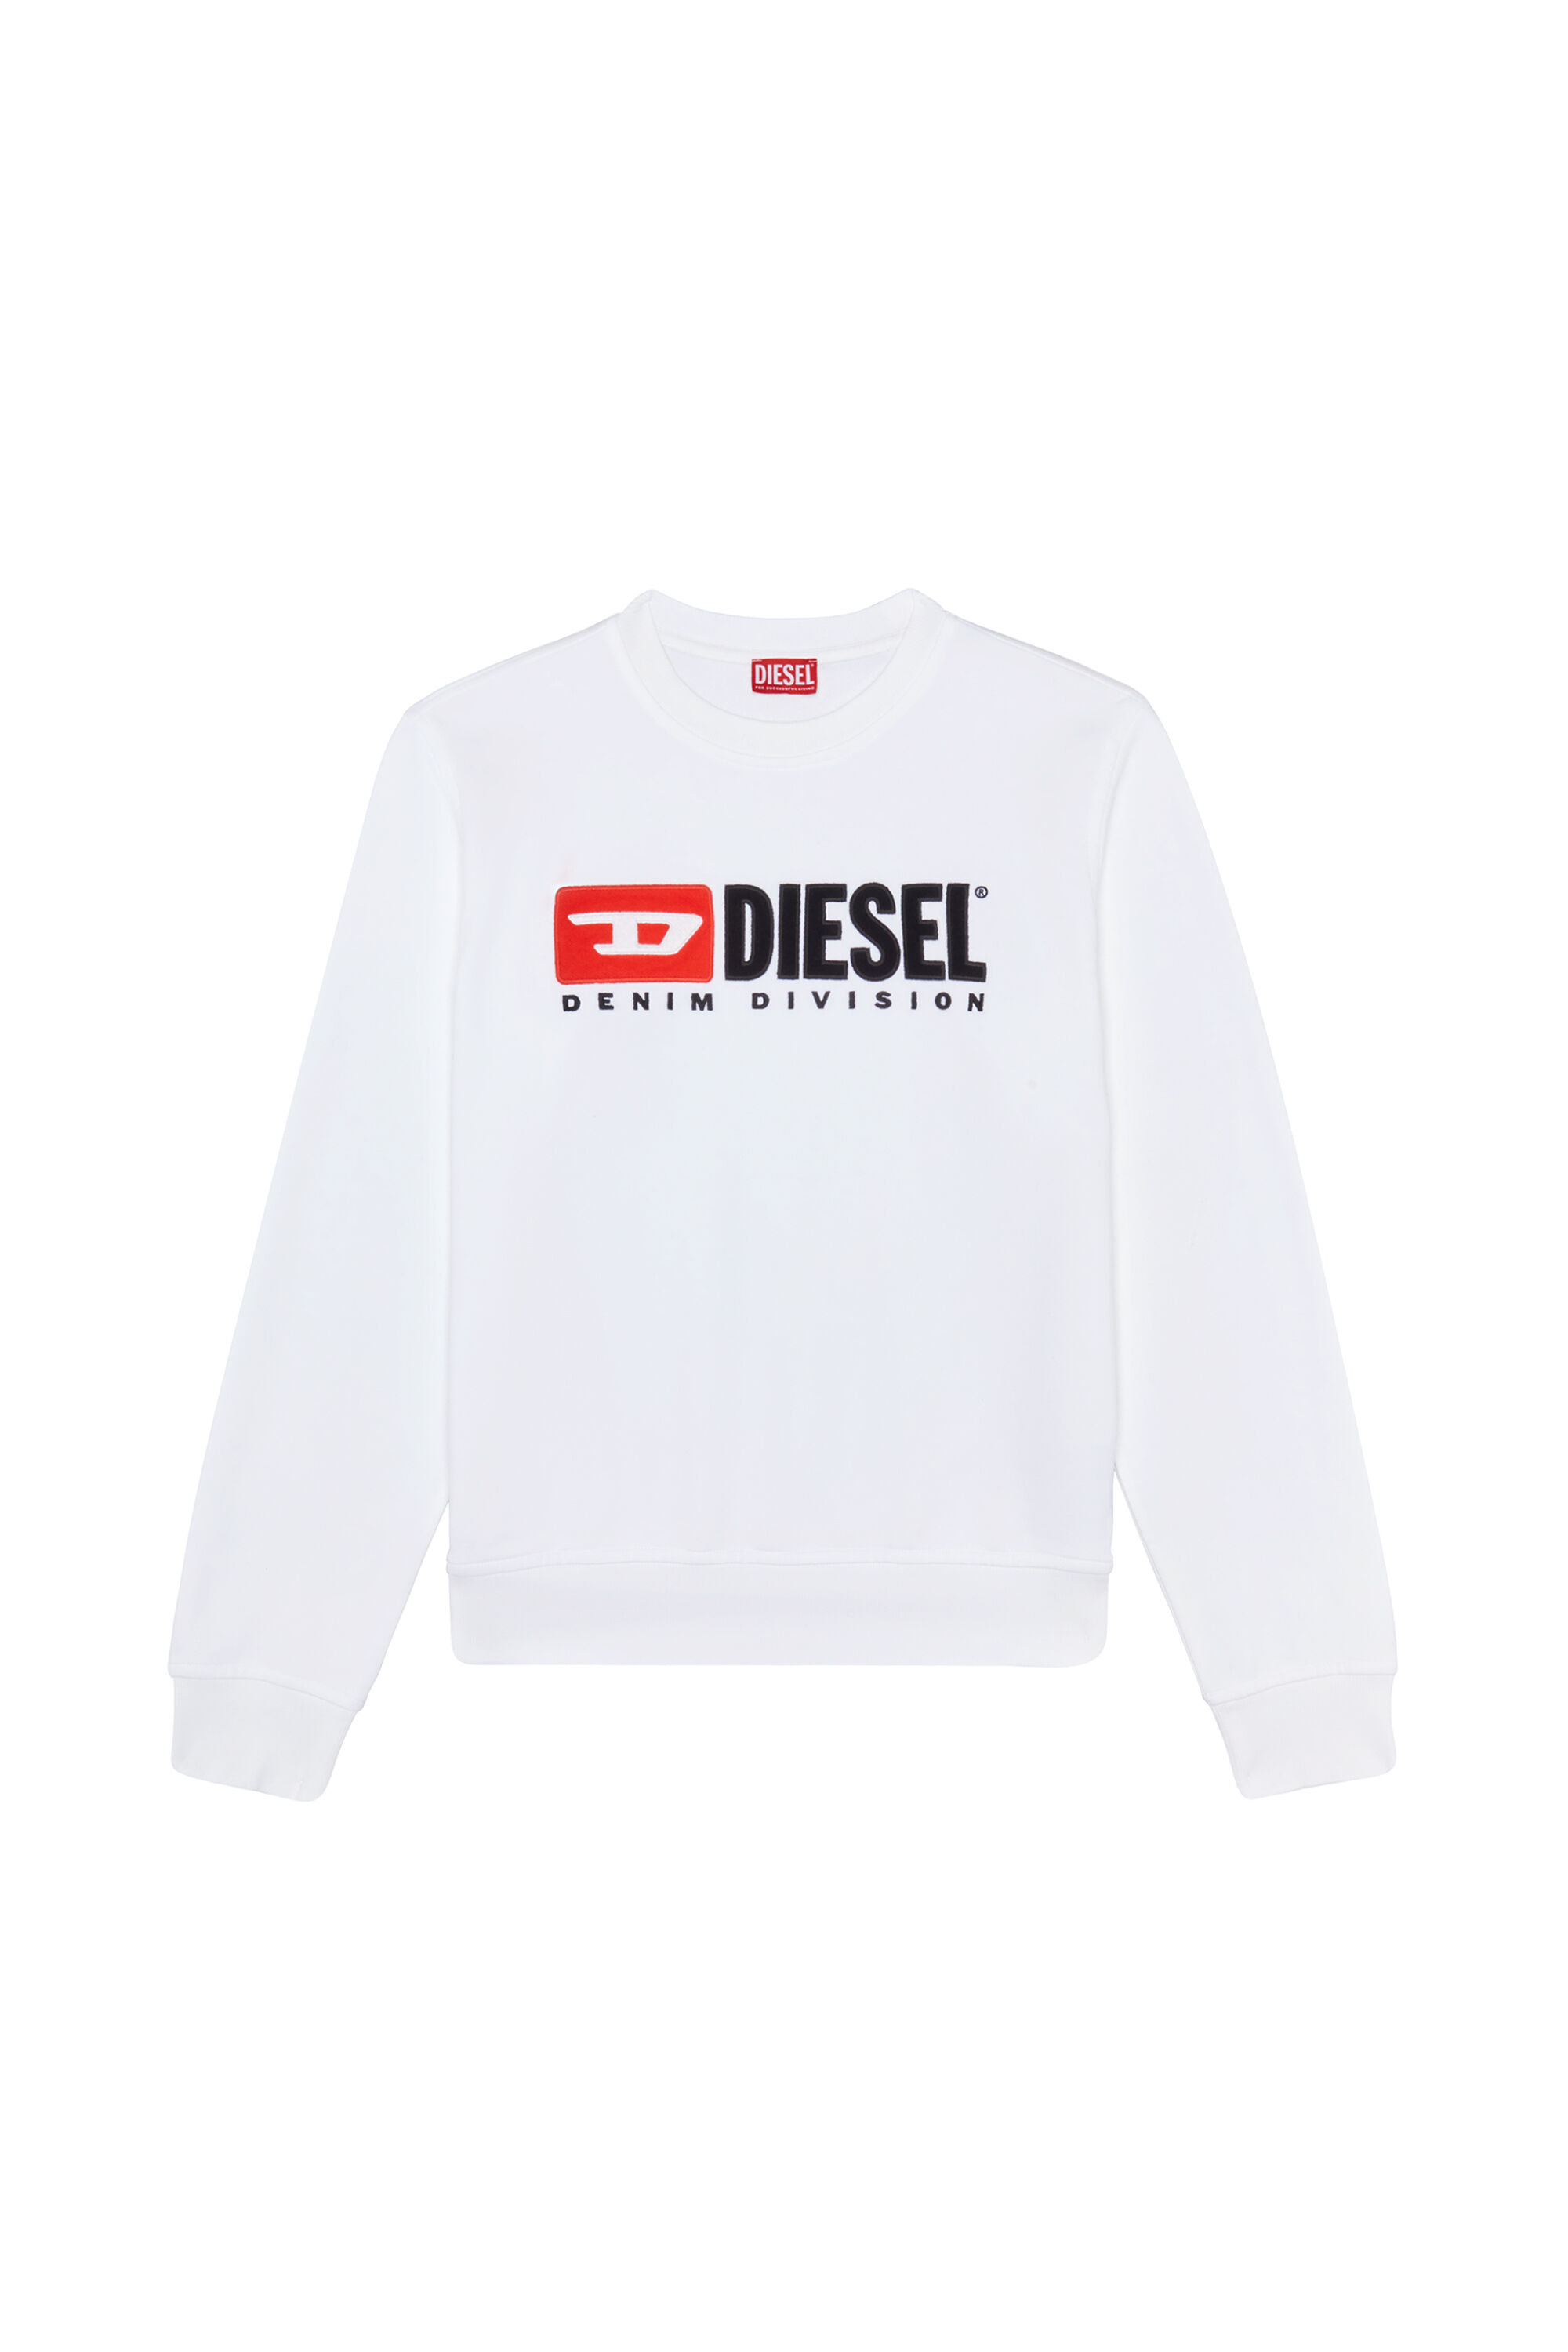 Diesel - S-GINN-DIV, Man Sweatshirt with logo appliqué in White - Image 2